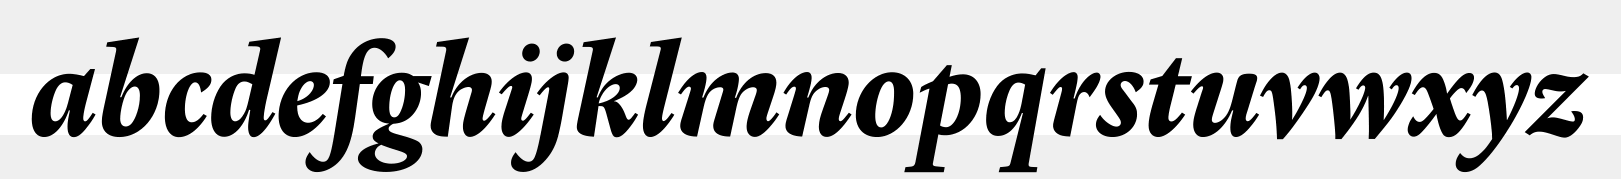 Lexicon No2 Italic E sample